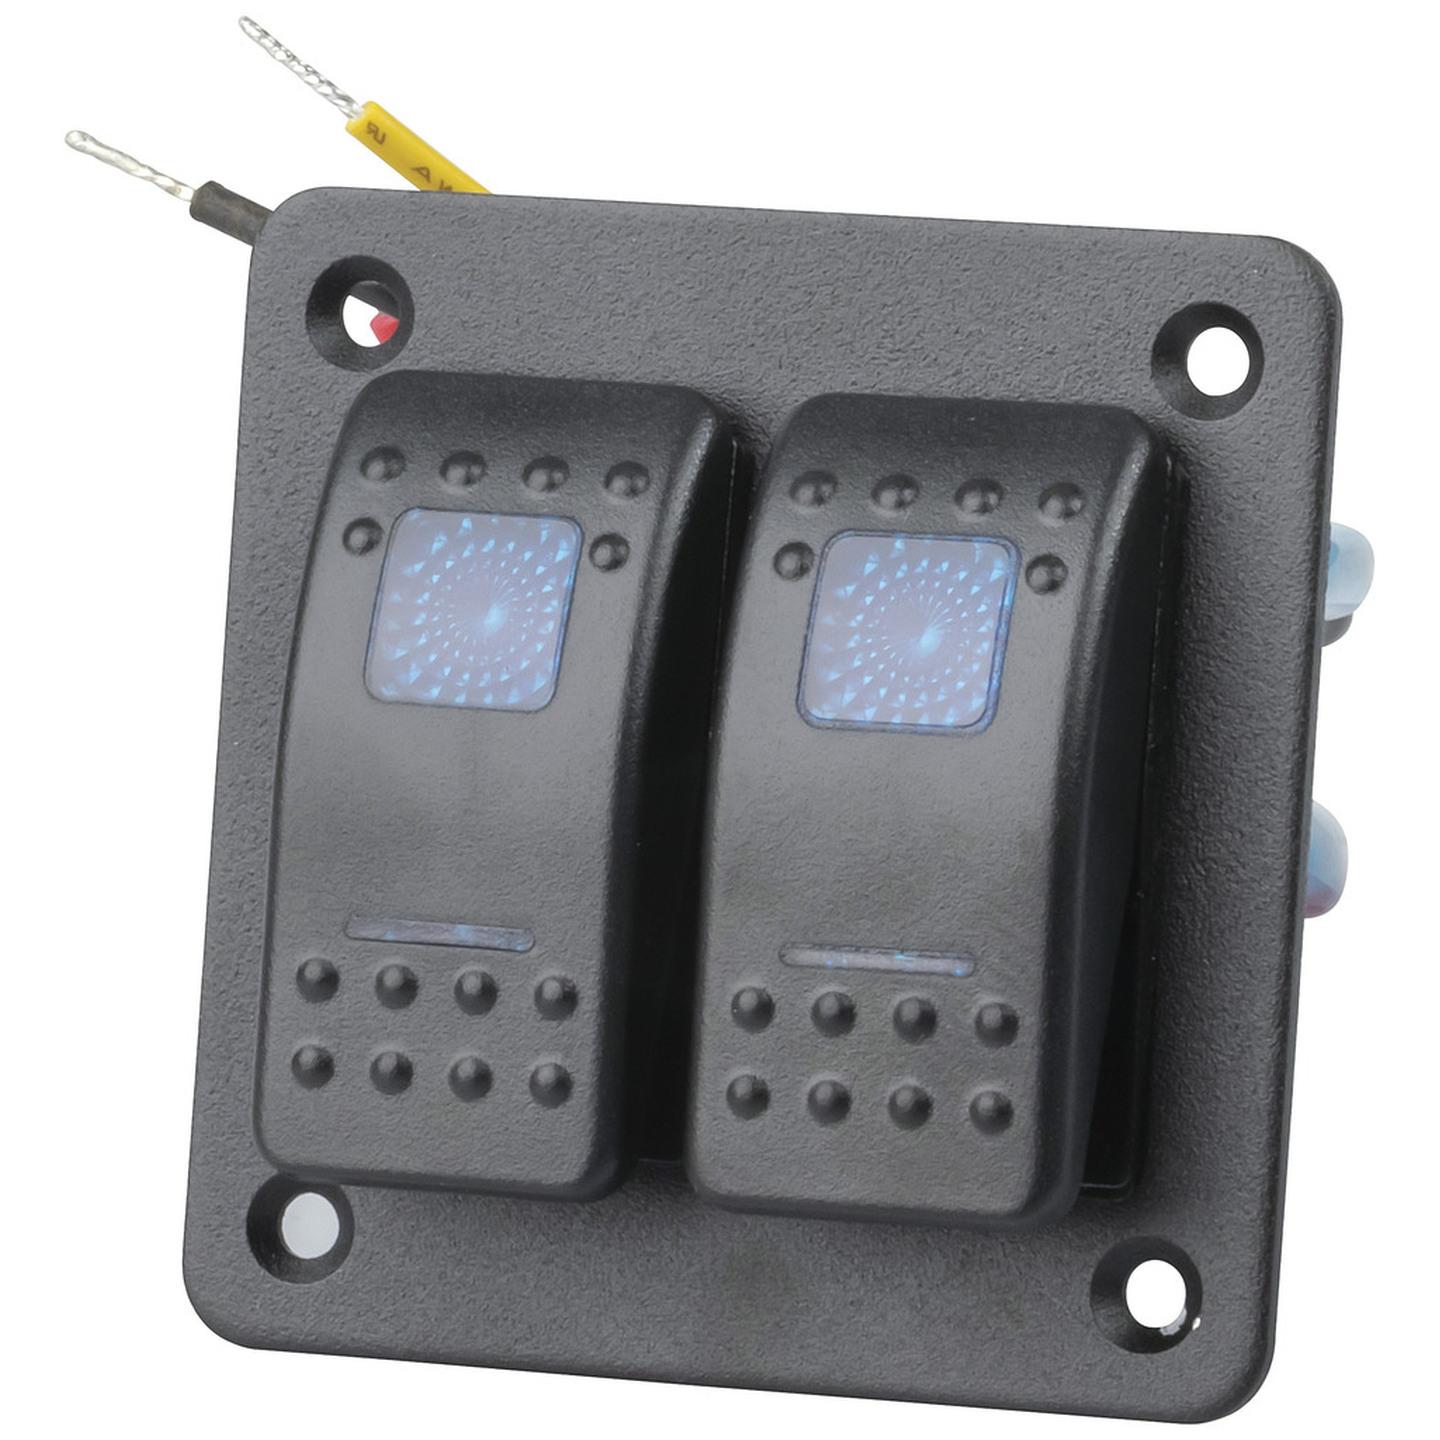 2 Way Illuminated Blue Rocker Switch Panel